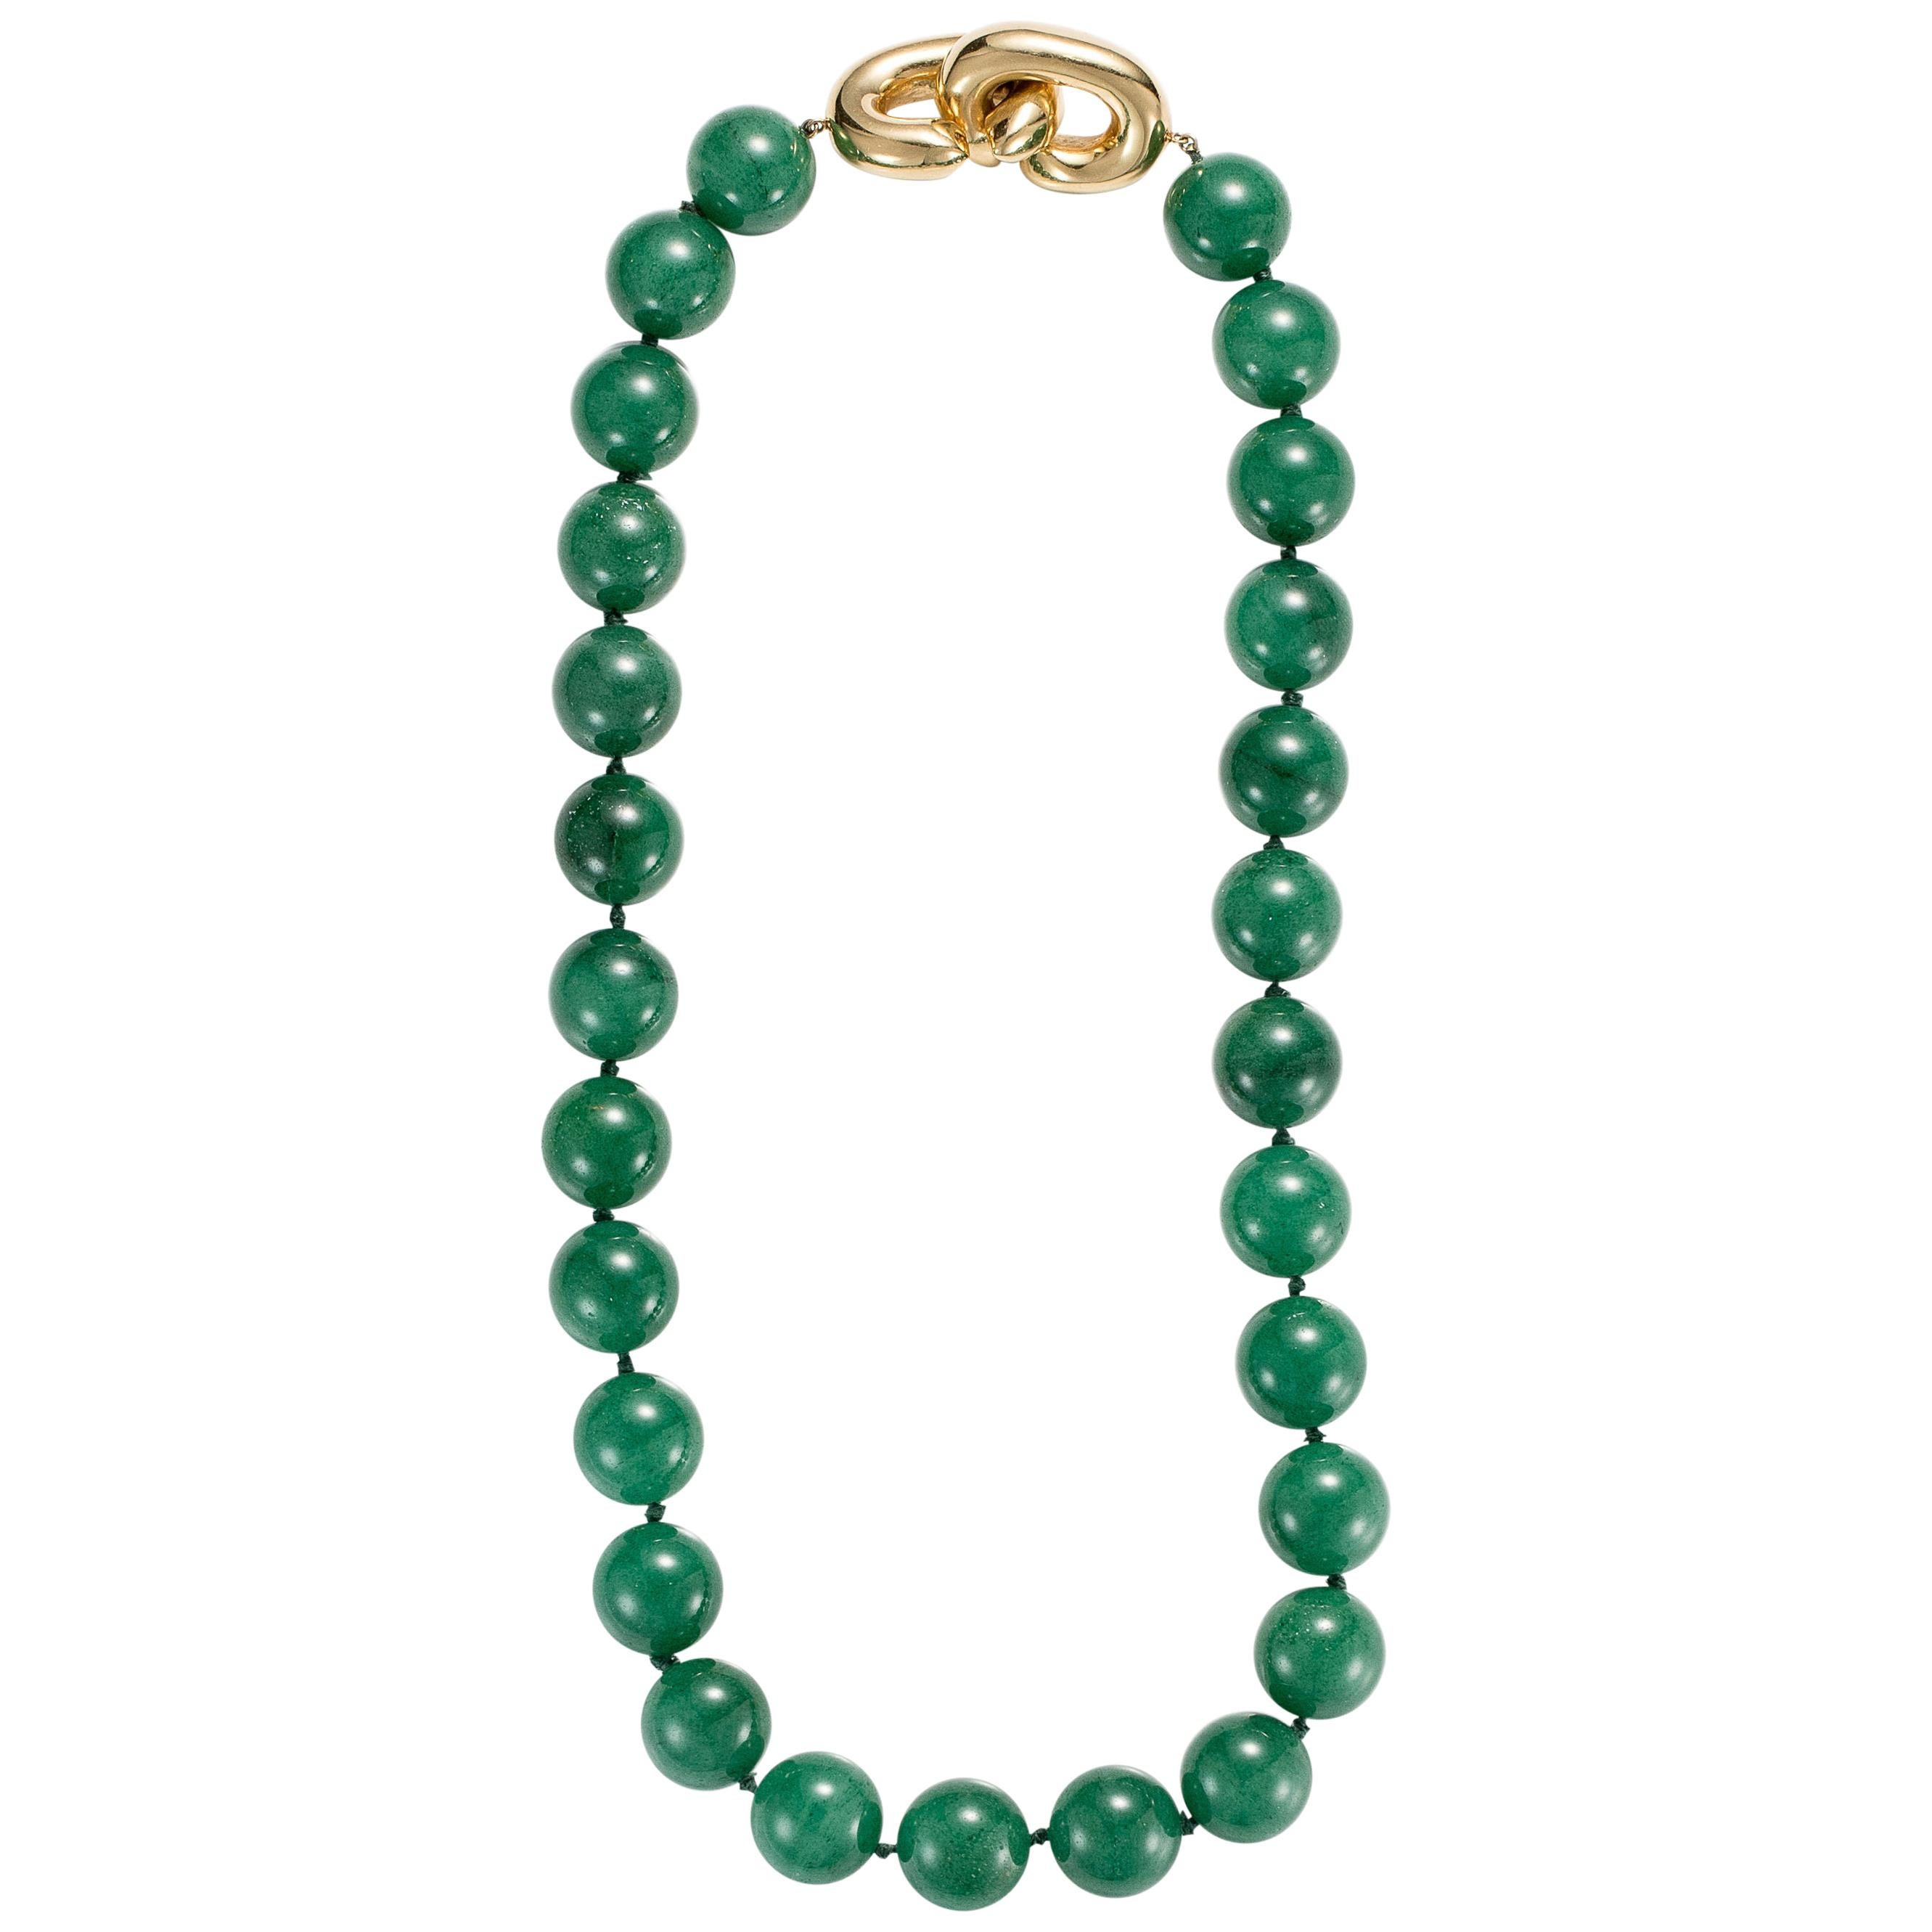 Tiffany & Co. Green Quartz Necklace, 18 Karat Gold